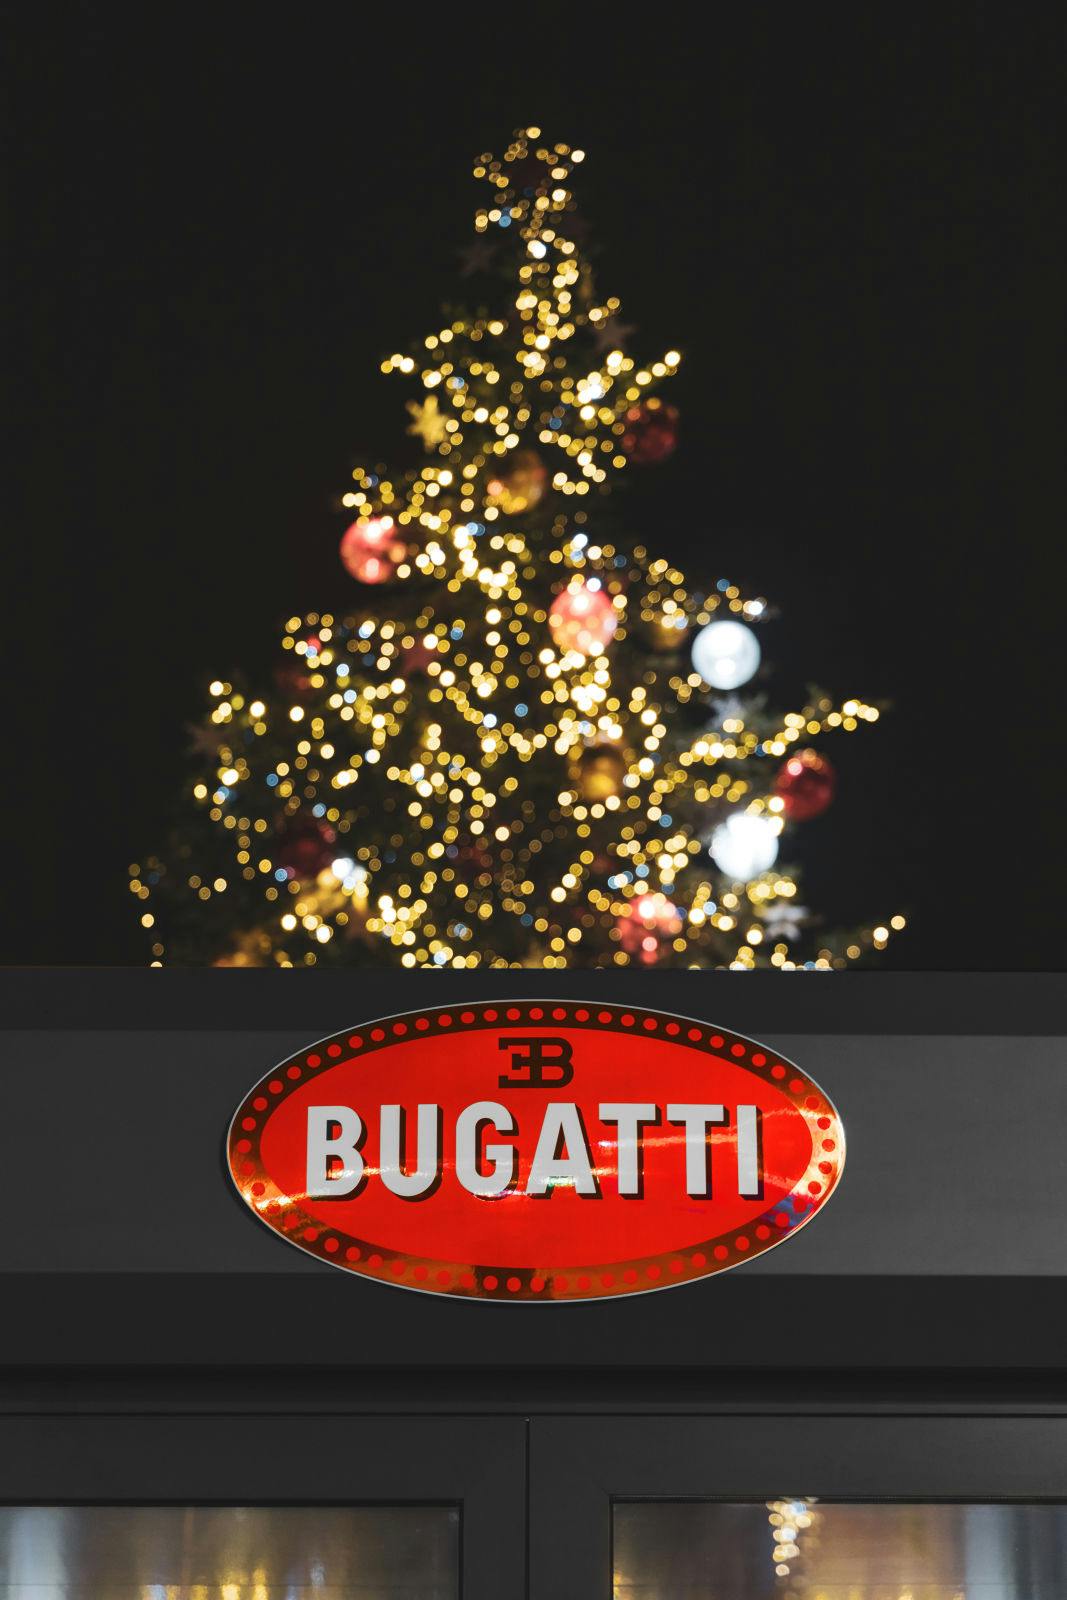 Instead of the Christmas market, this year the Bugatti La Voiture Noire is exhibited at the Place de l’Hôtel de Ville.